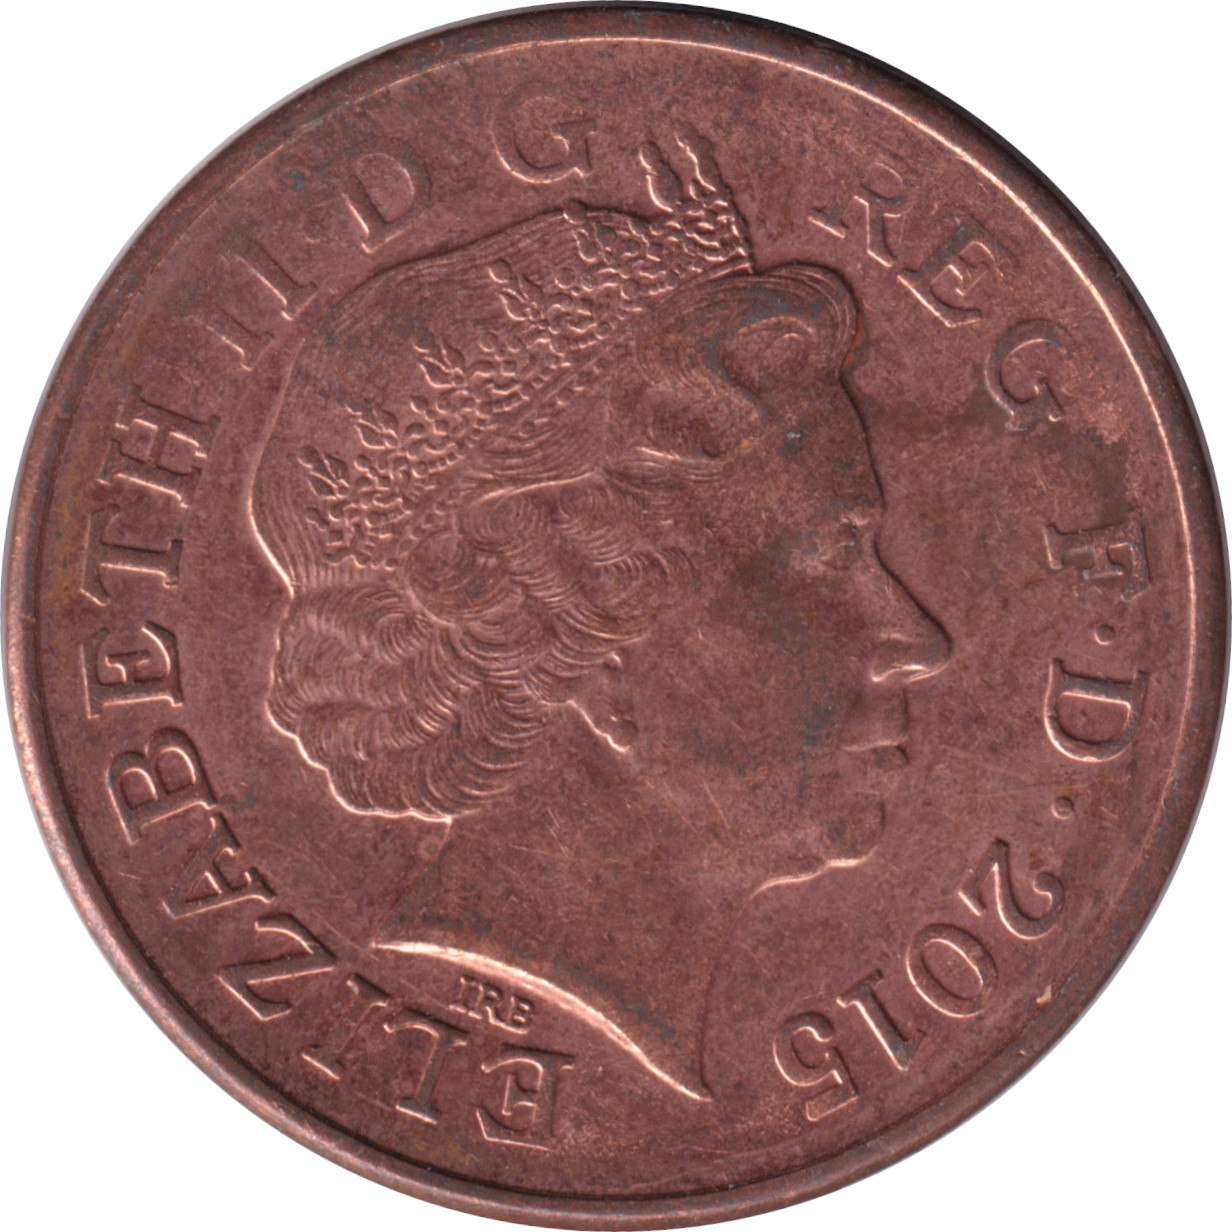 2 pence - Elizabeth II - Tête agée - Blason